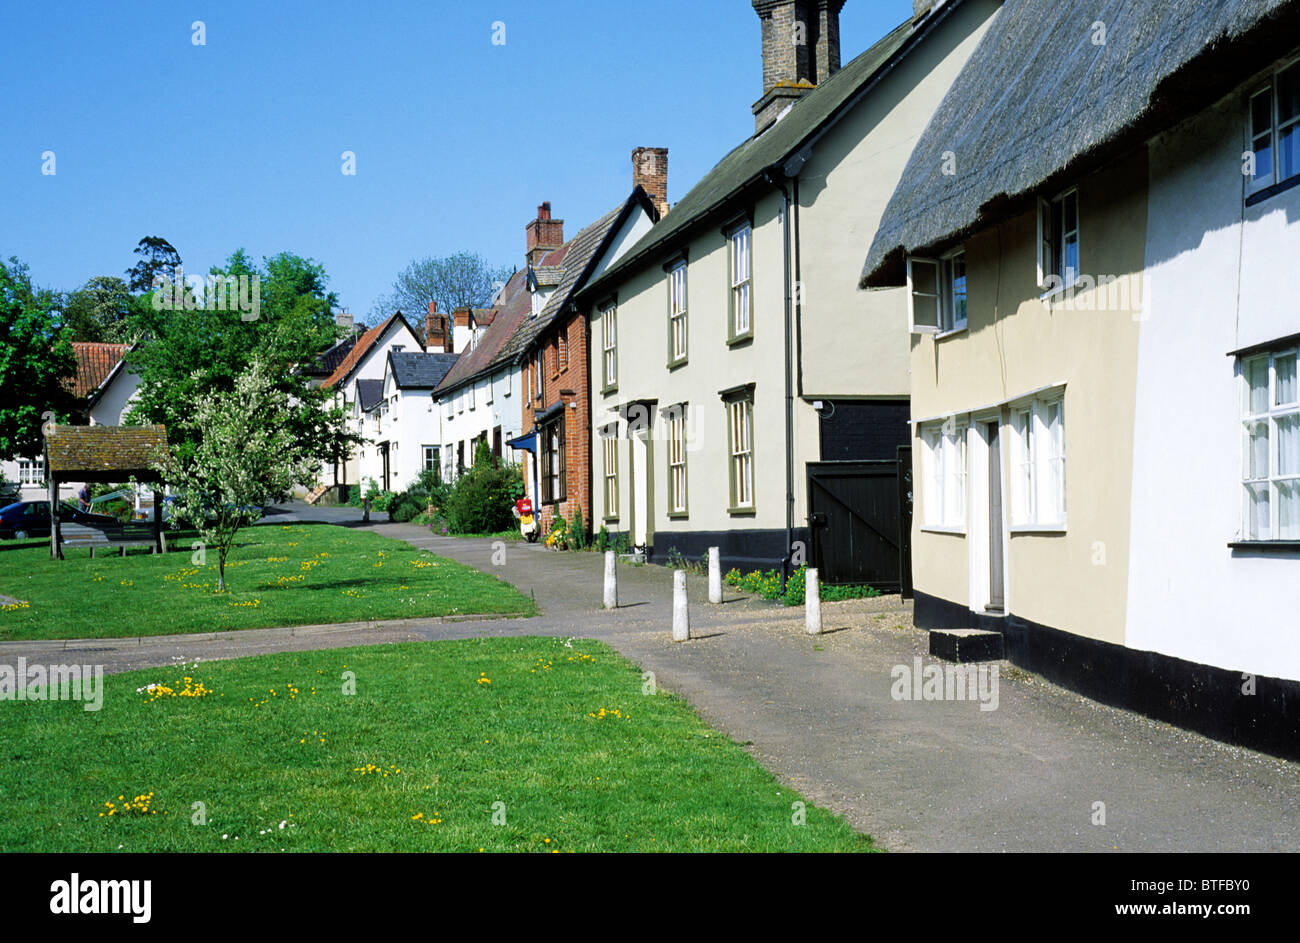 Dorf Hoxne, Suffolk, England UK englische Dörfer Grüns strohgedeckten Farbe gewaschen Häuser grün Stockfoto